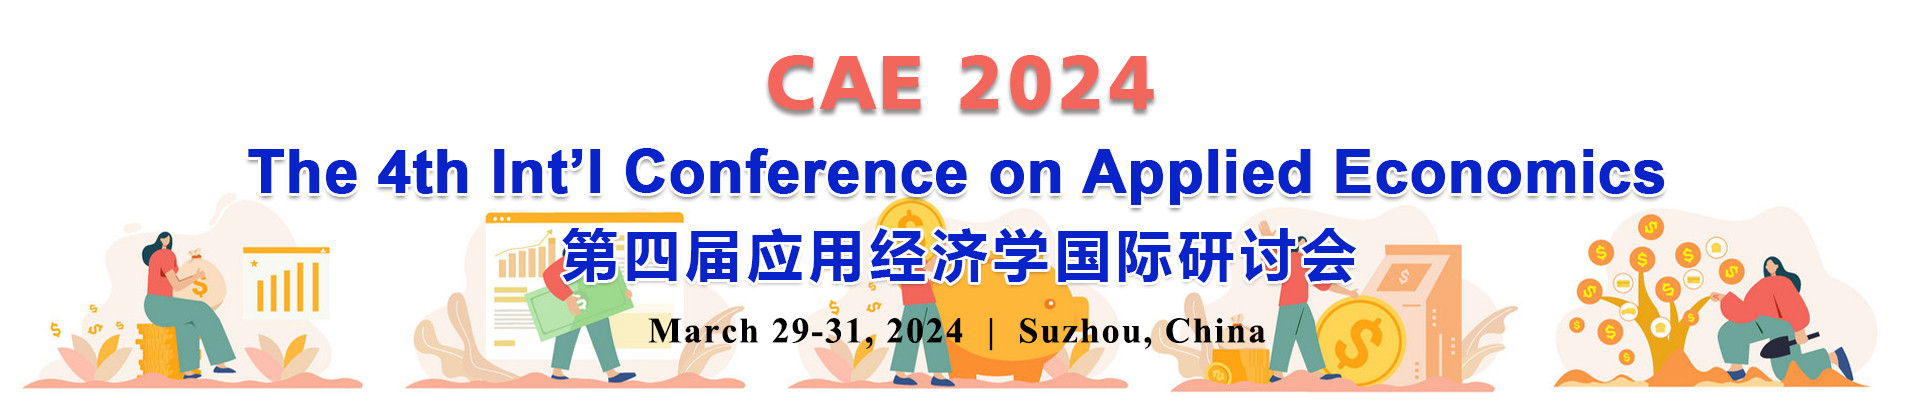 第四届应用经济学国际研讨会(CAE 2024)